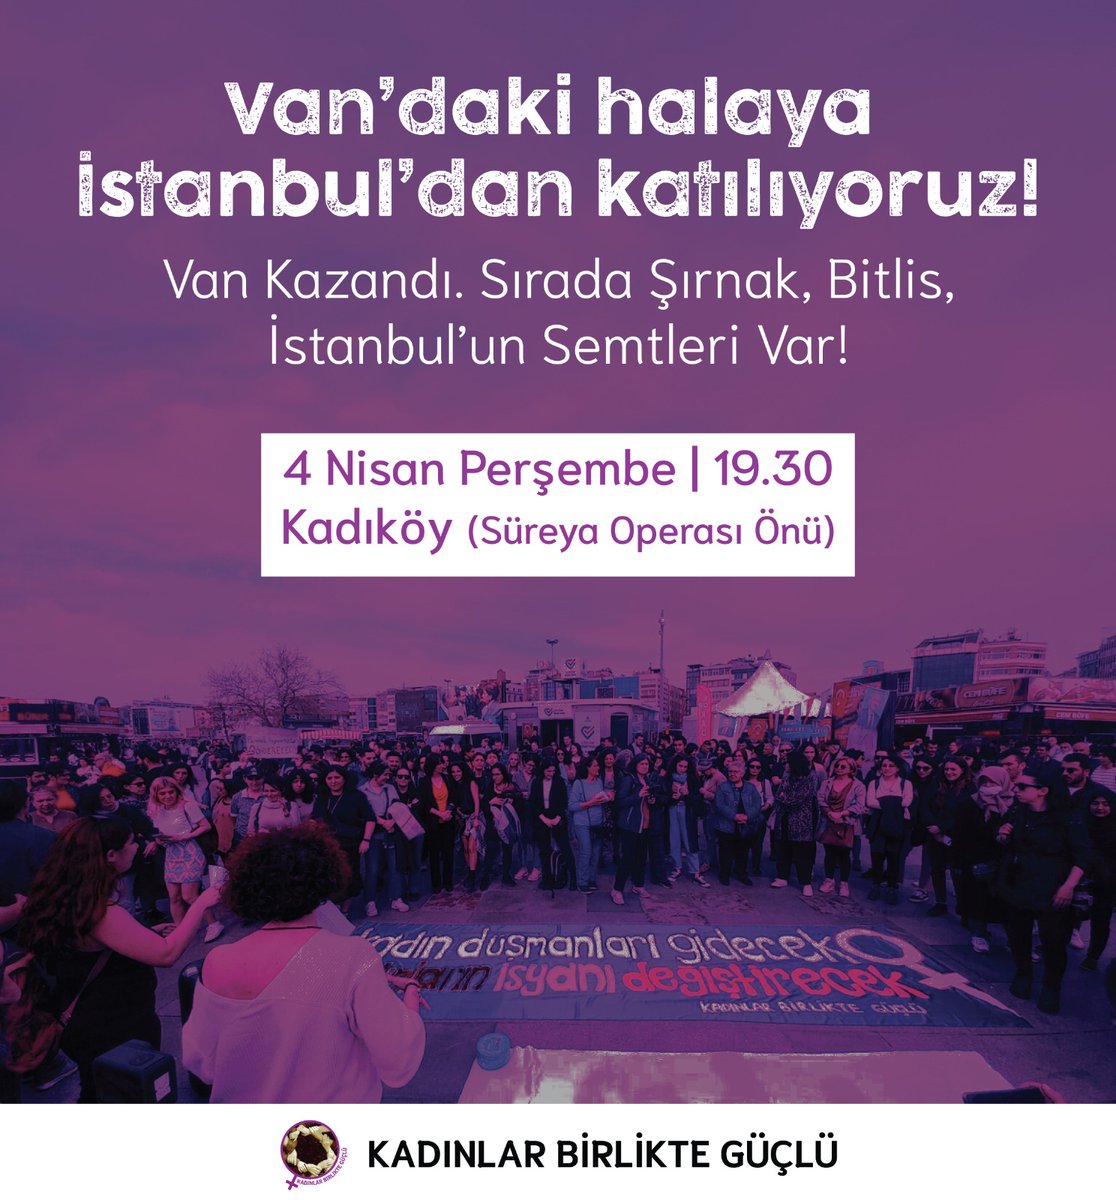 Van'daki halaya İstanbul’dan katılıyoruz! Van Halkı Kazandı, Kadınlar Kazandı ✌️ Yarın 19.30’da Süreyya Operası önündeyiz ✌️ #VanKazandı